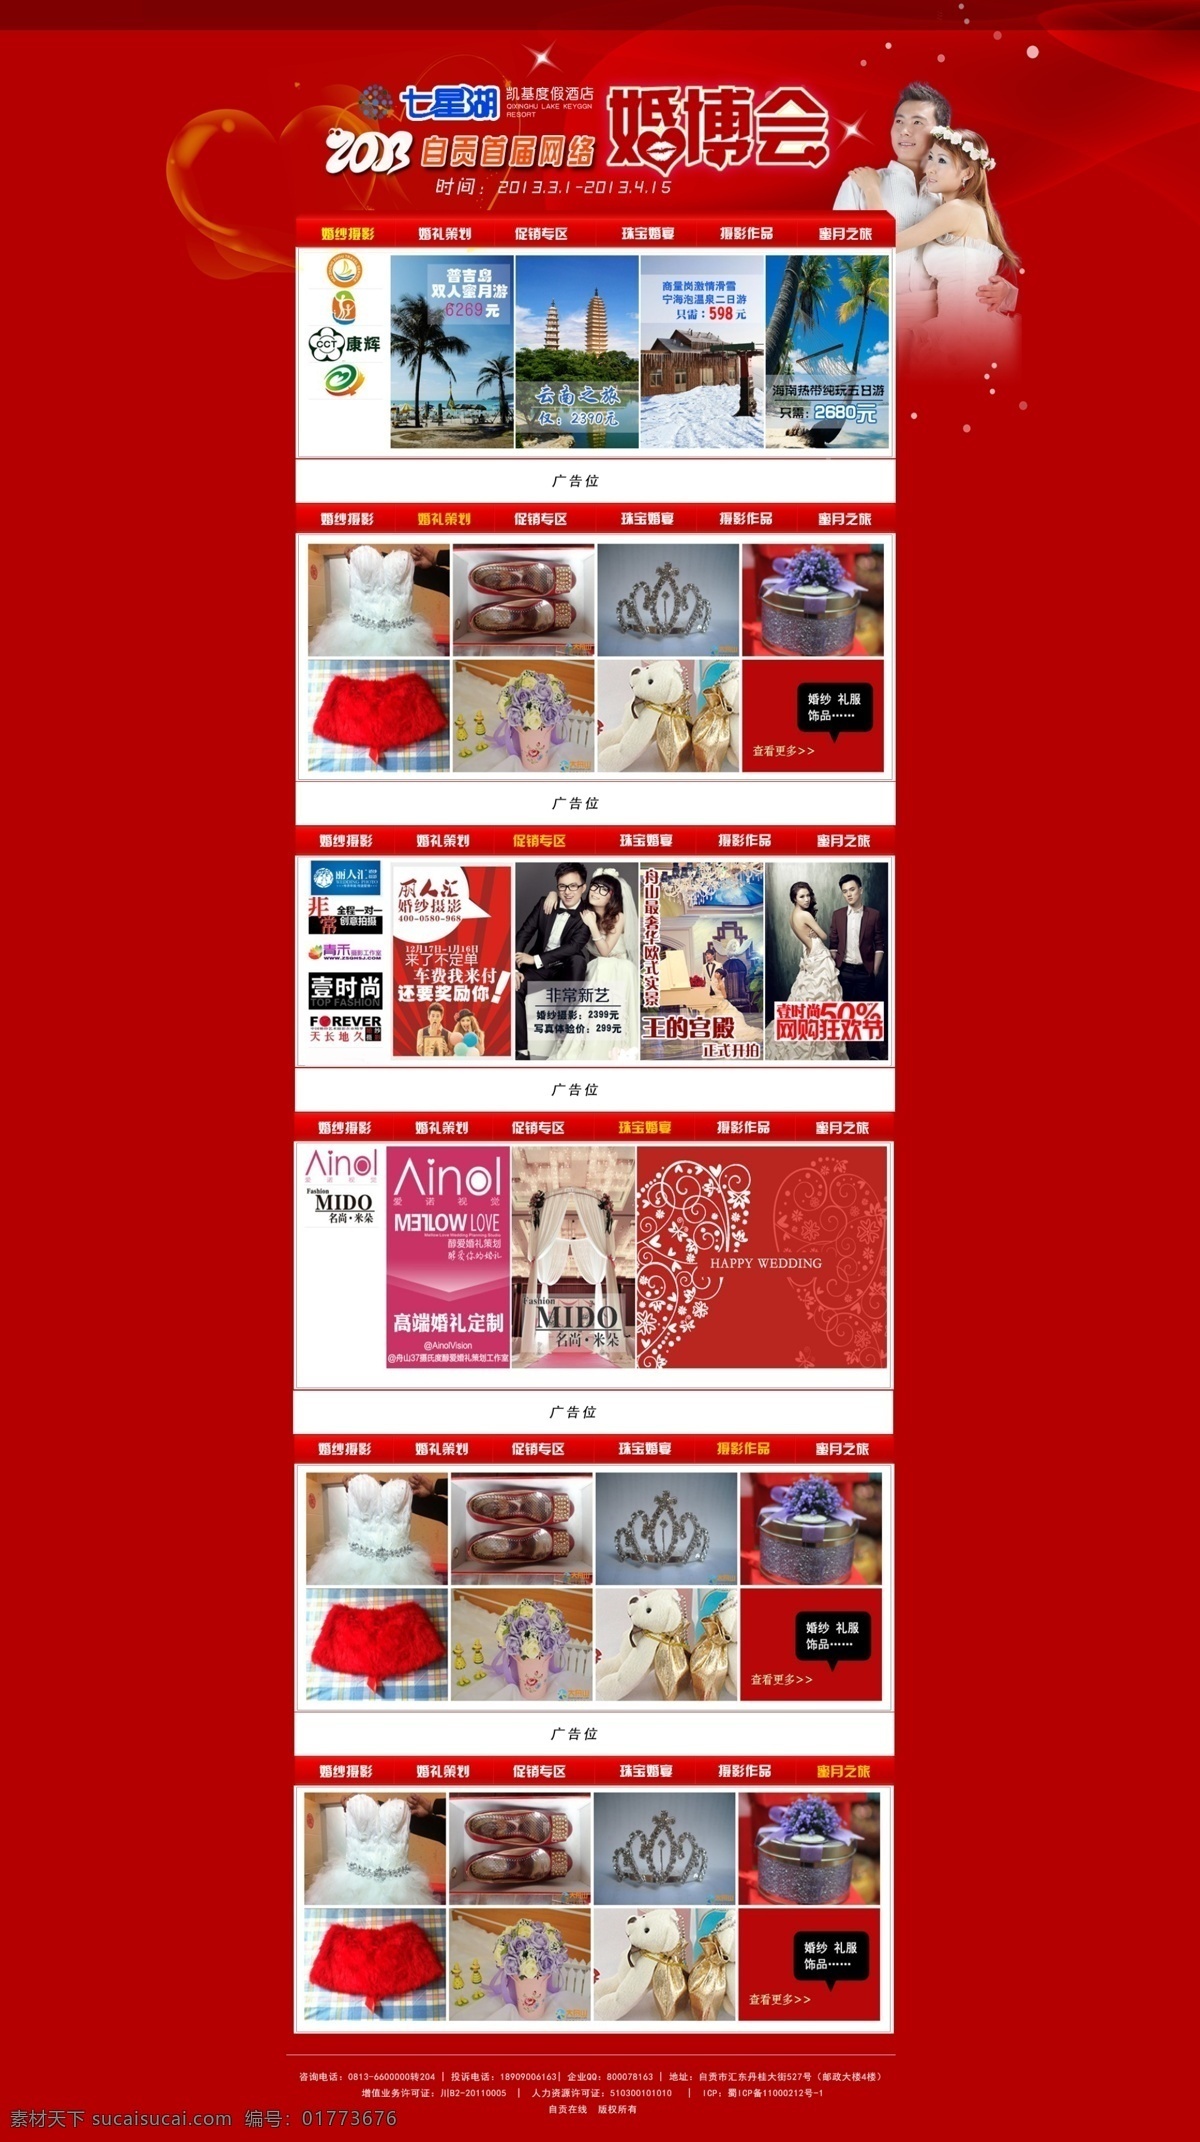 婚 博 会 网页模板 博览会 红色 婚博会 婚纱 网页 网站 源文件 中文模版 网页素材